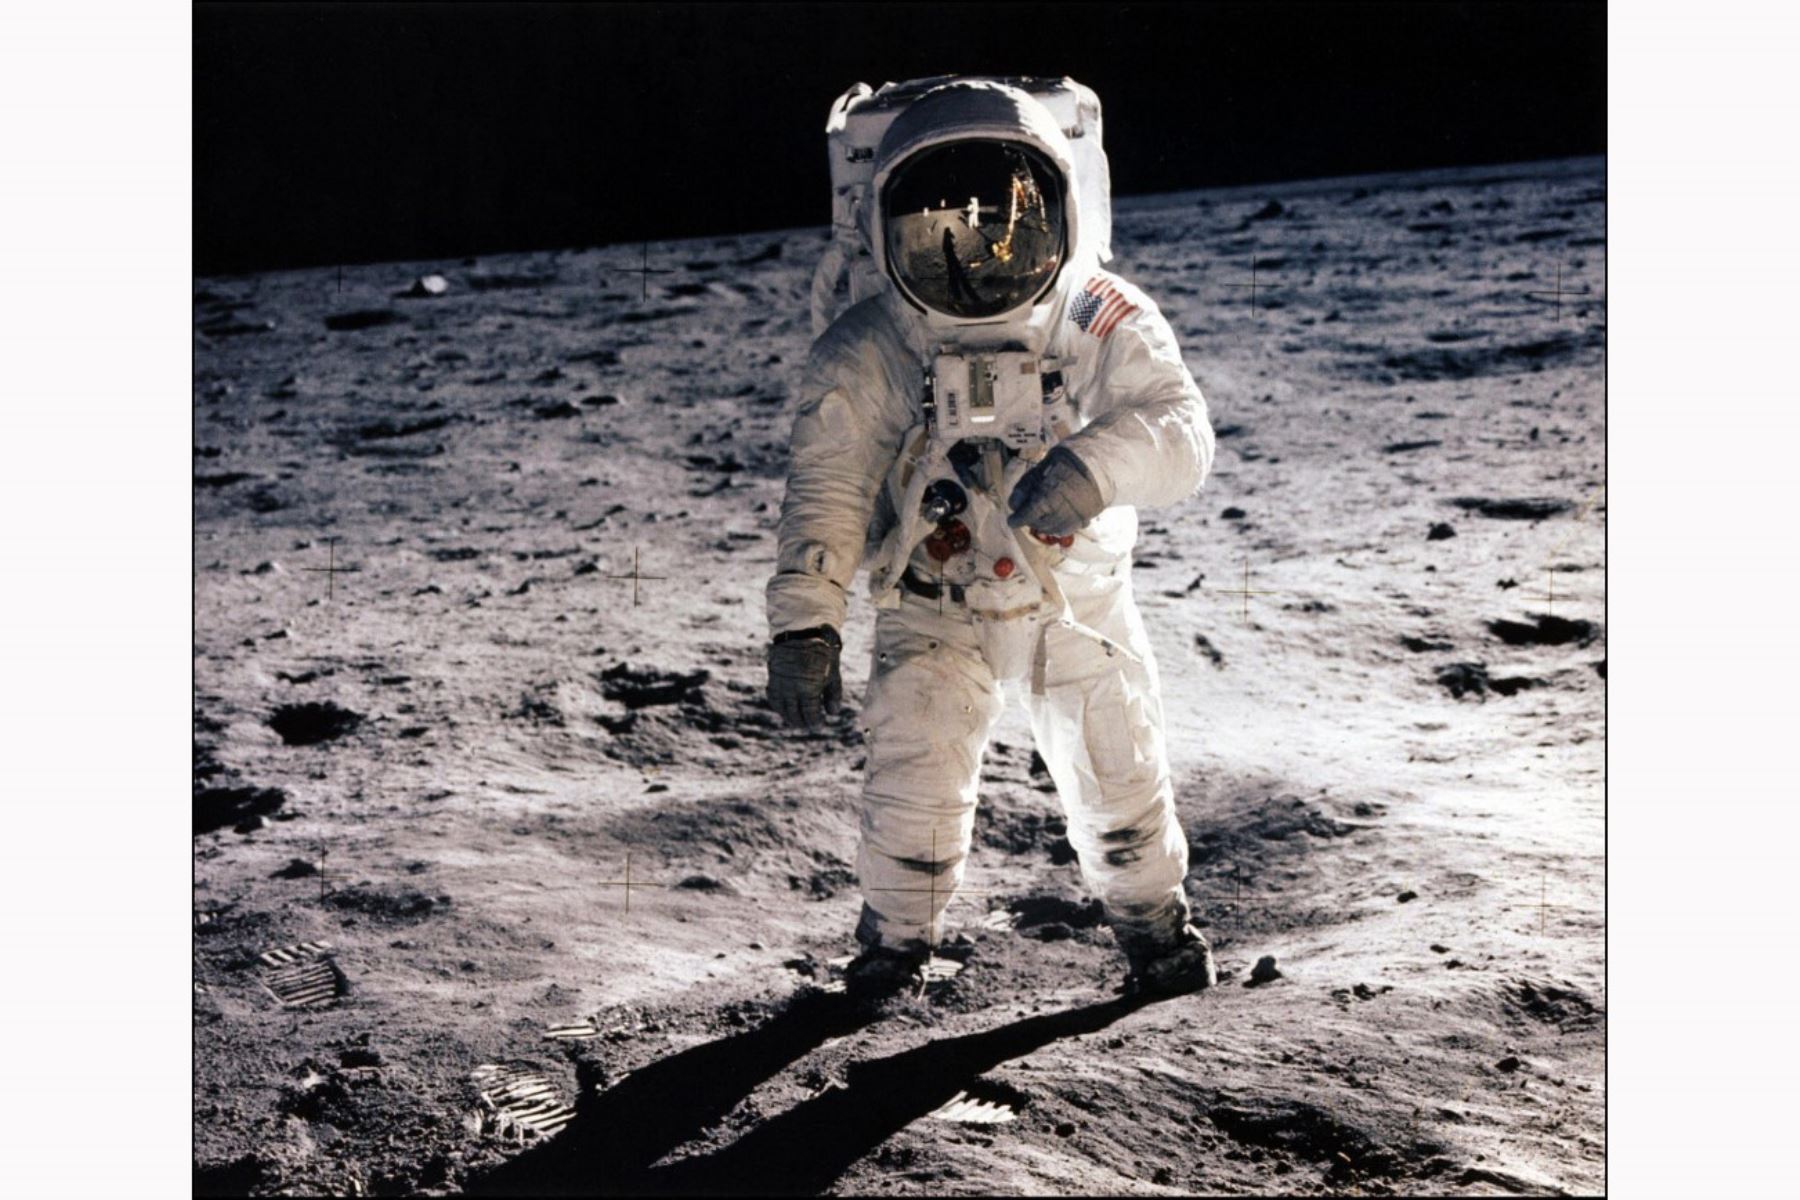 Fotografía tomada el 20 de julio de 1969 del astronauta Buzz Aldrin, piloto del módulo lunar, caminando sobre la superficie de la luna durante la actividad extravehicular (EVA) del Apolo 11. El astronauta Neil A. Armstrong tomó esta fotografía con una cámara de superficie lunar de 70 mm. Foto de la NASA / AFP